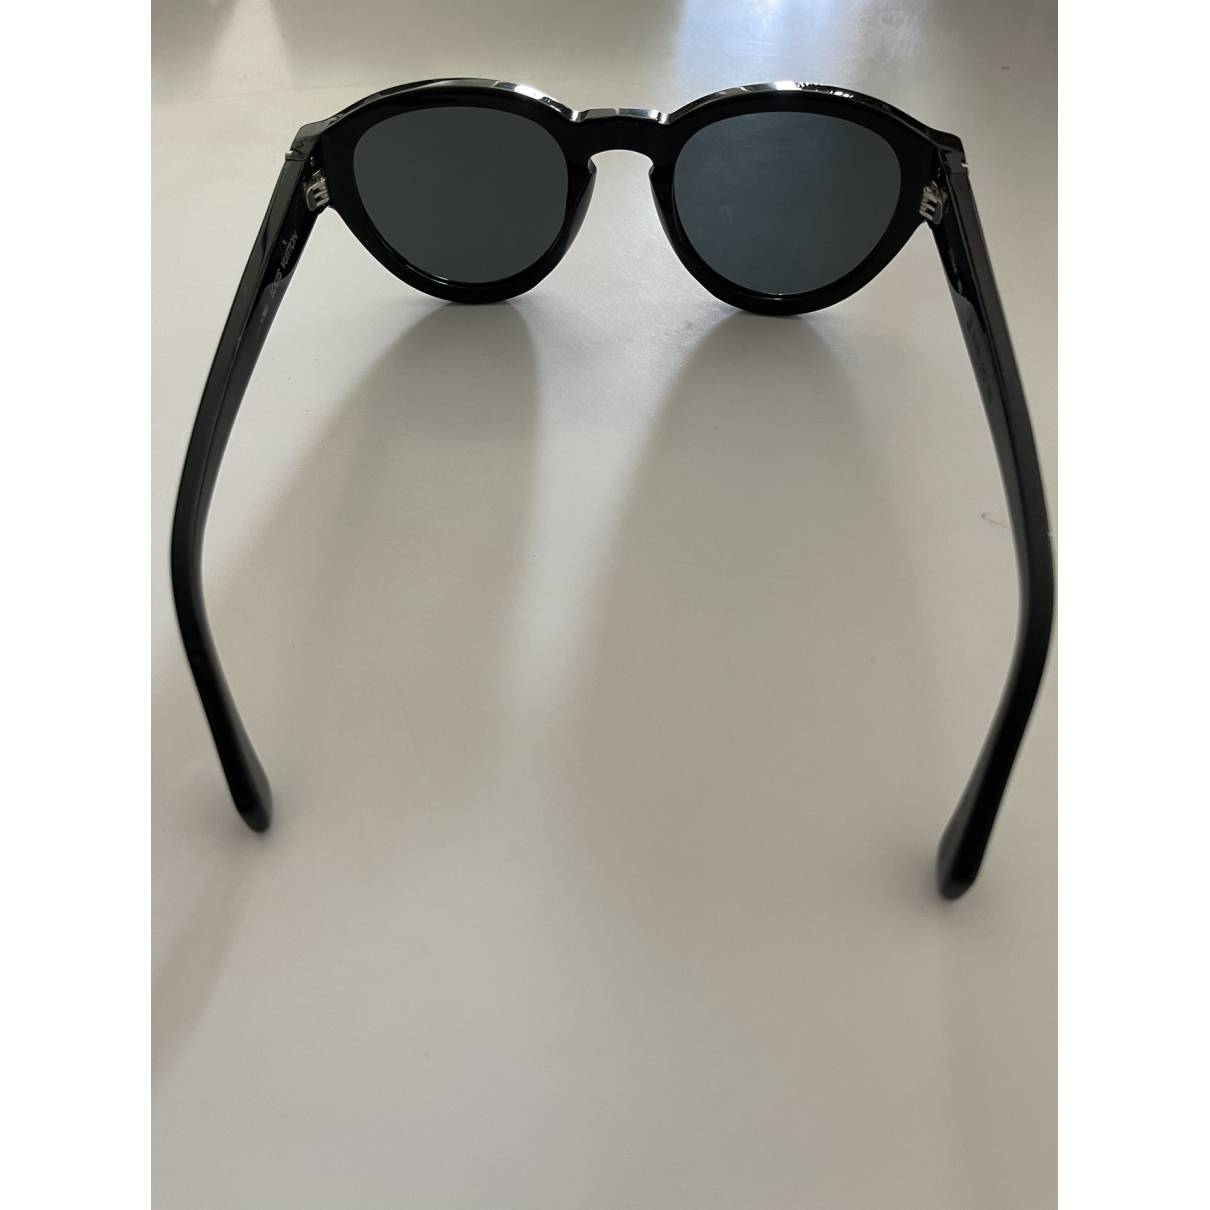 Aviator sunglasses Louis Vuitton Black in Plastic - 31033642